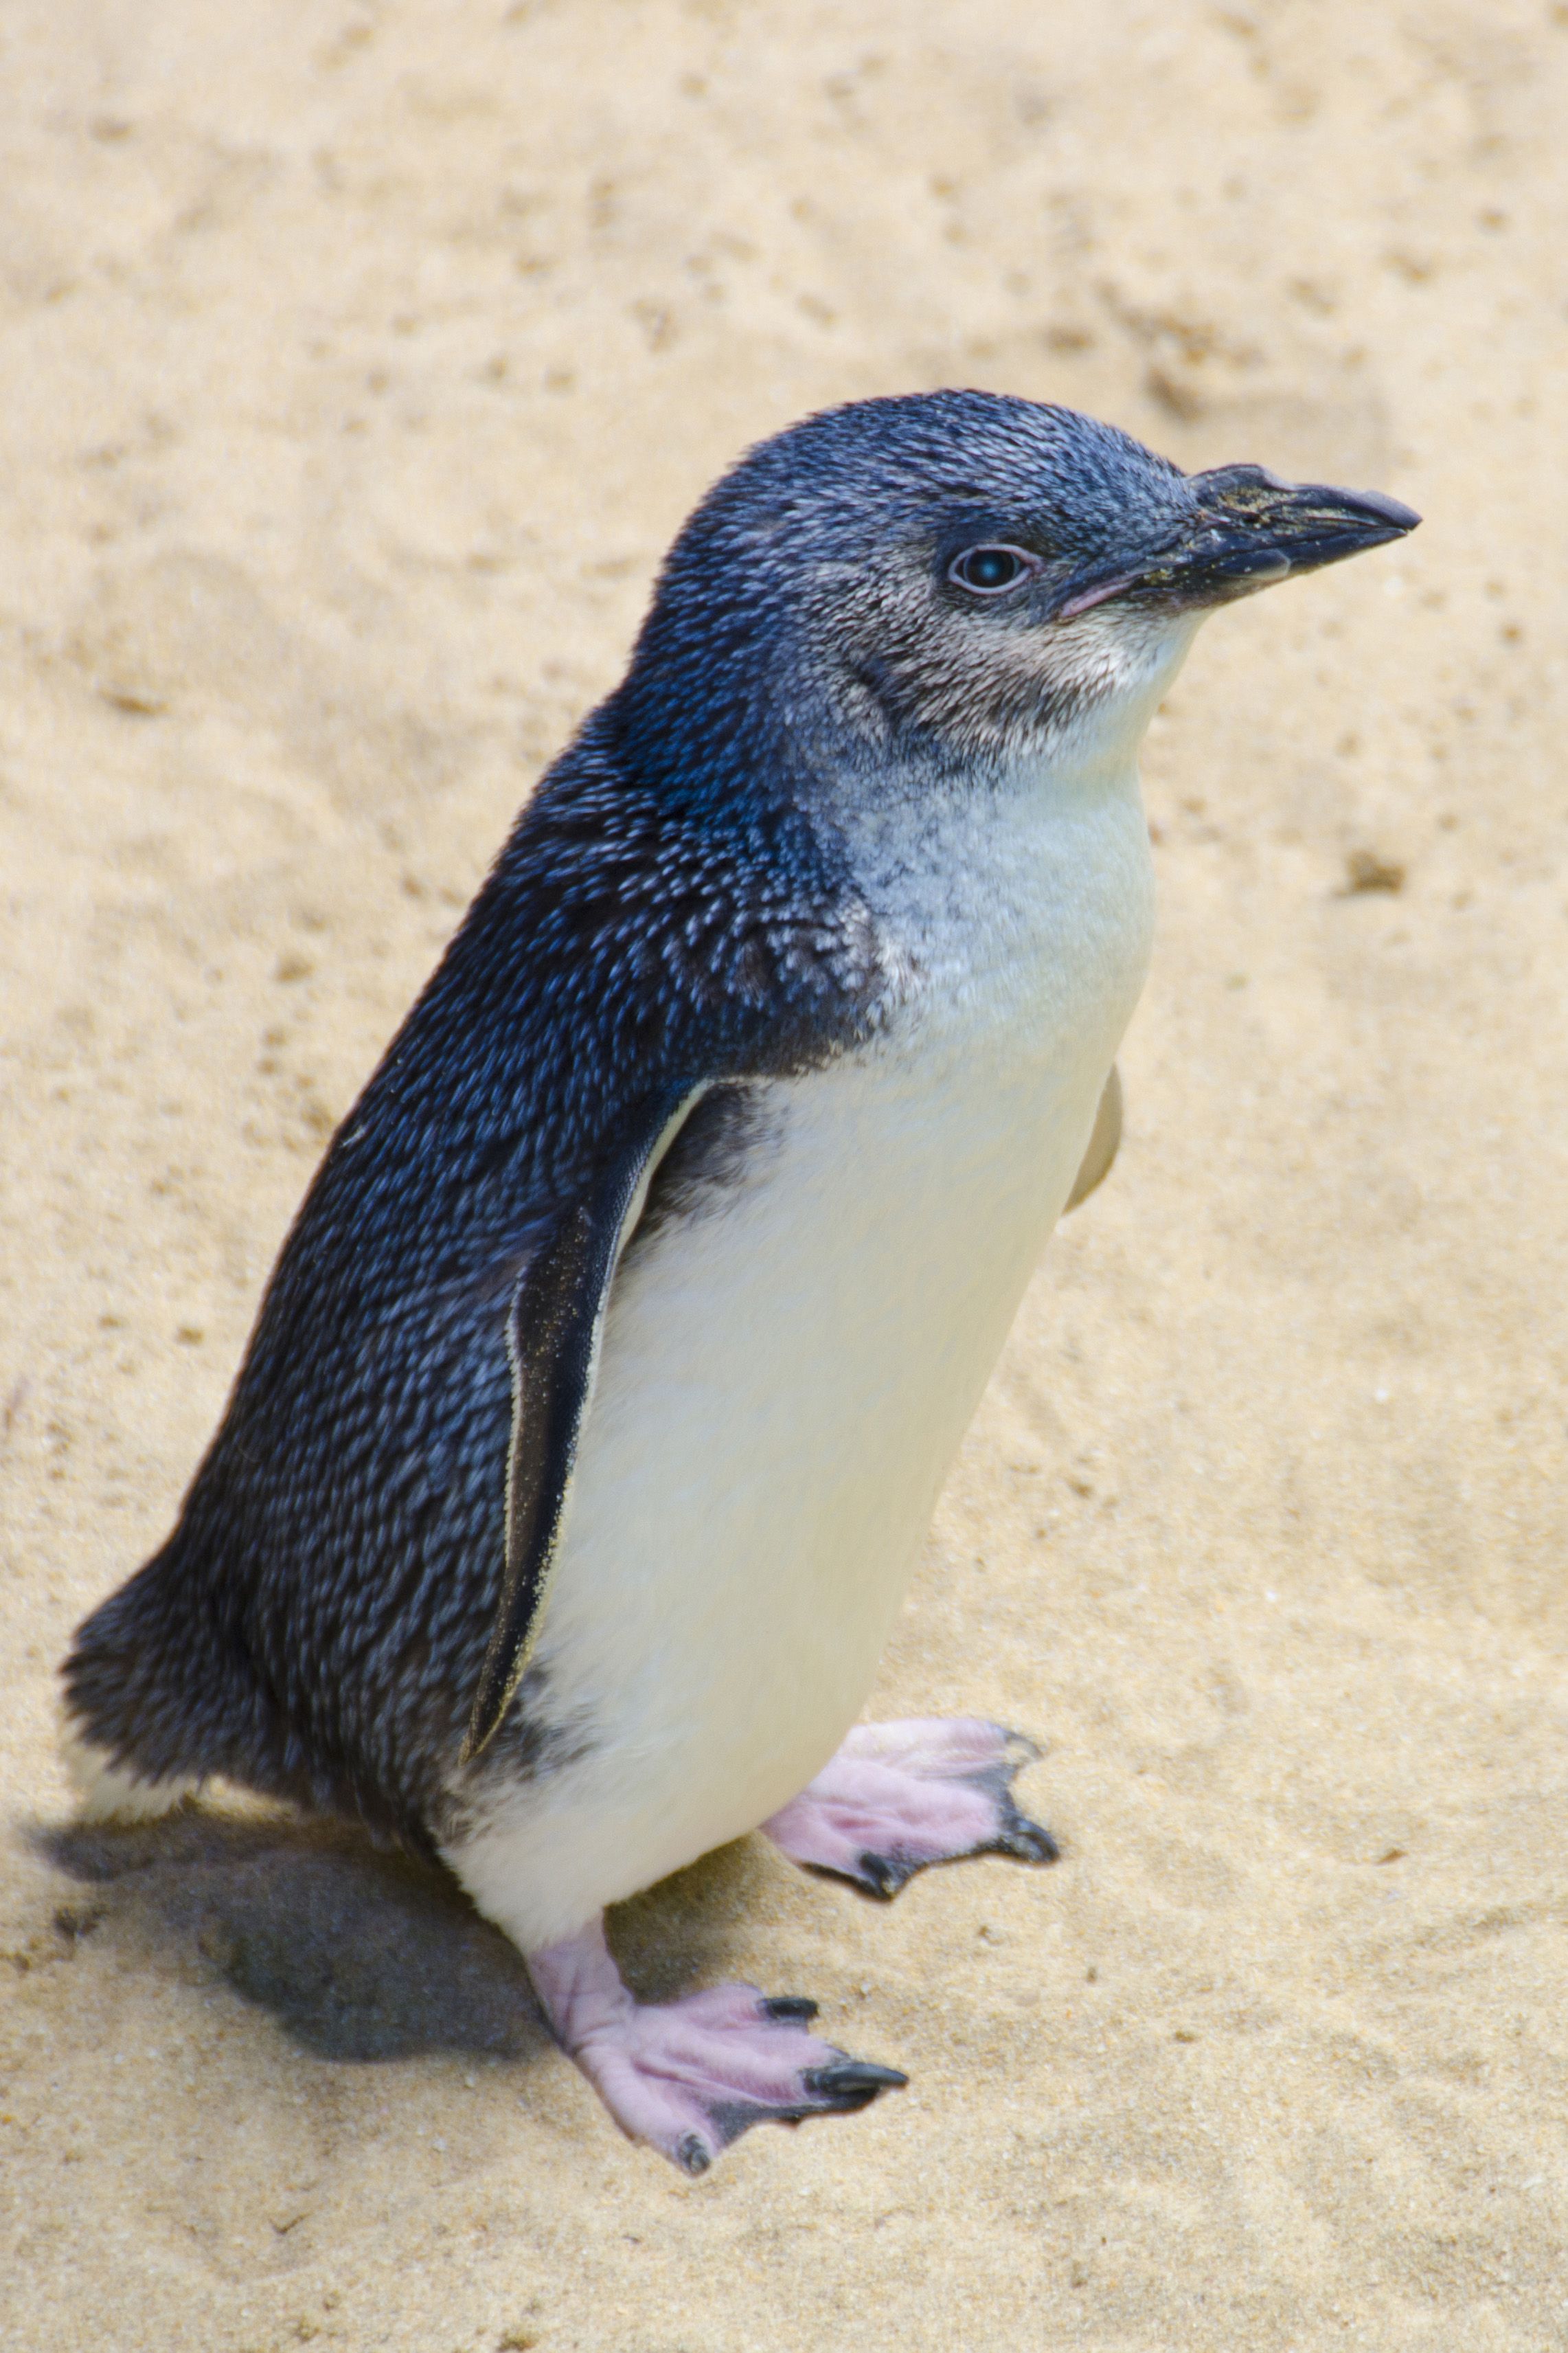 Little penguin